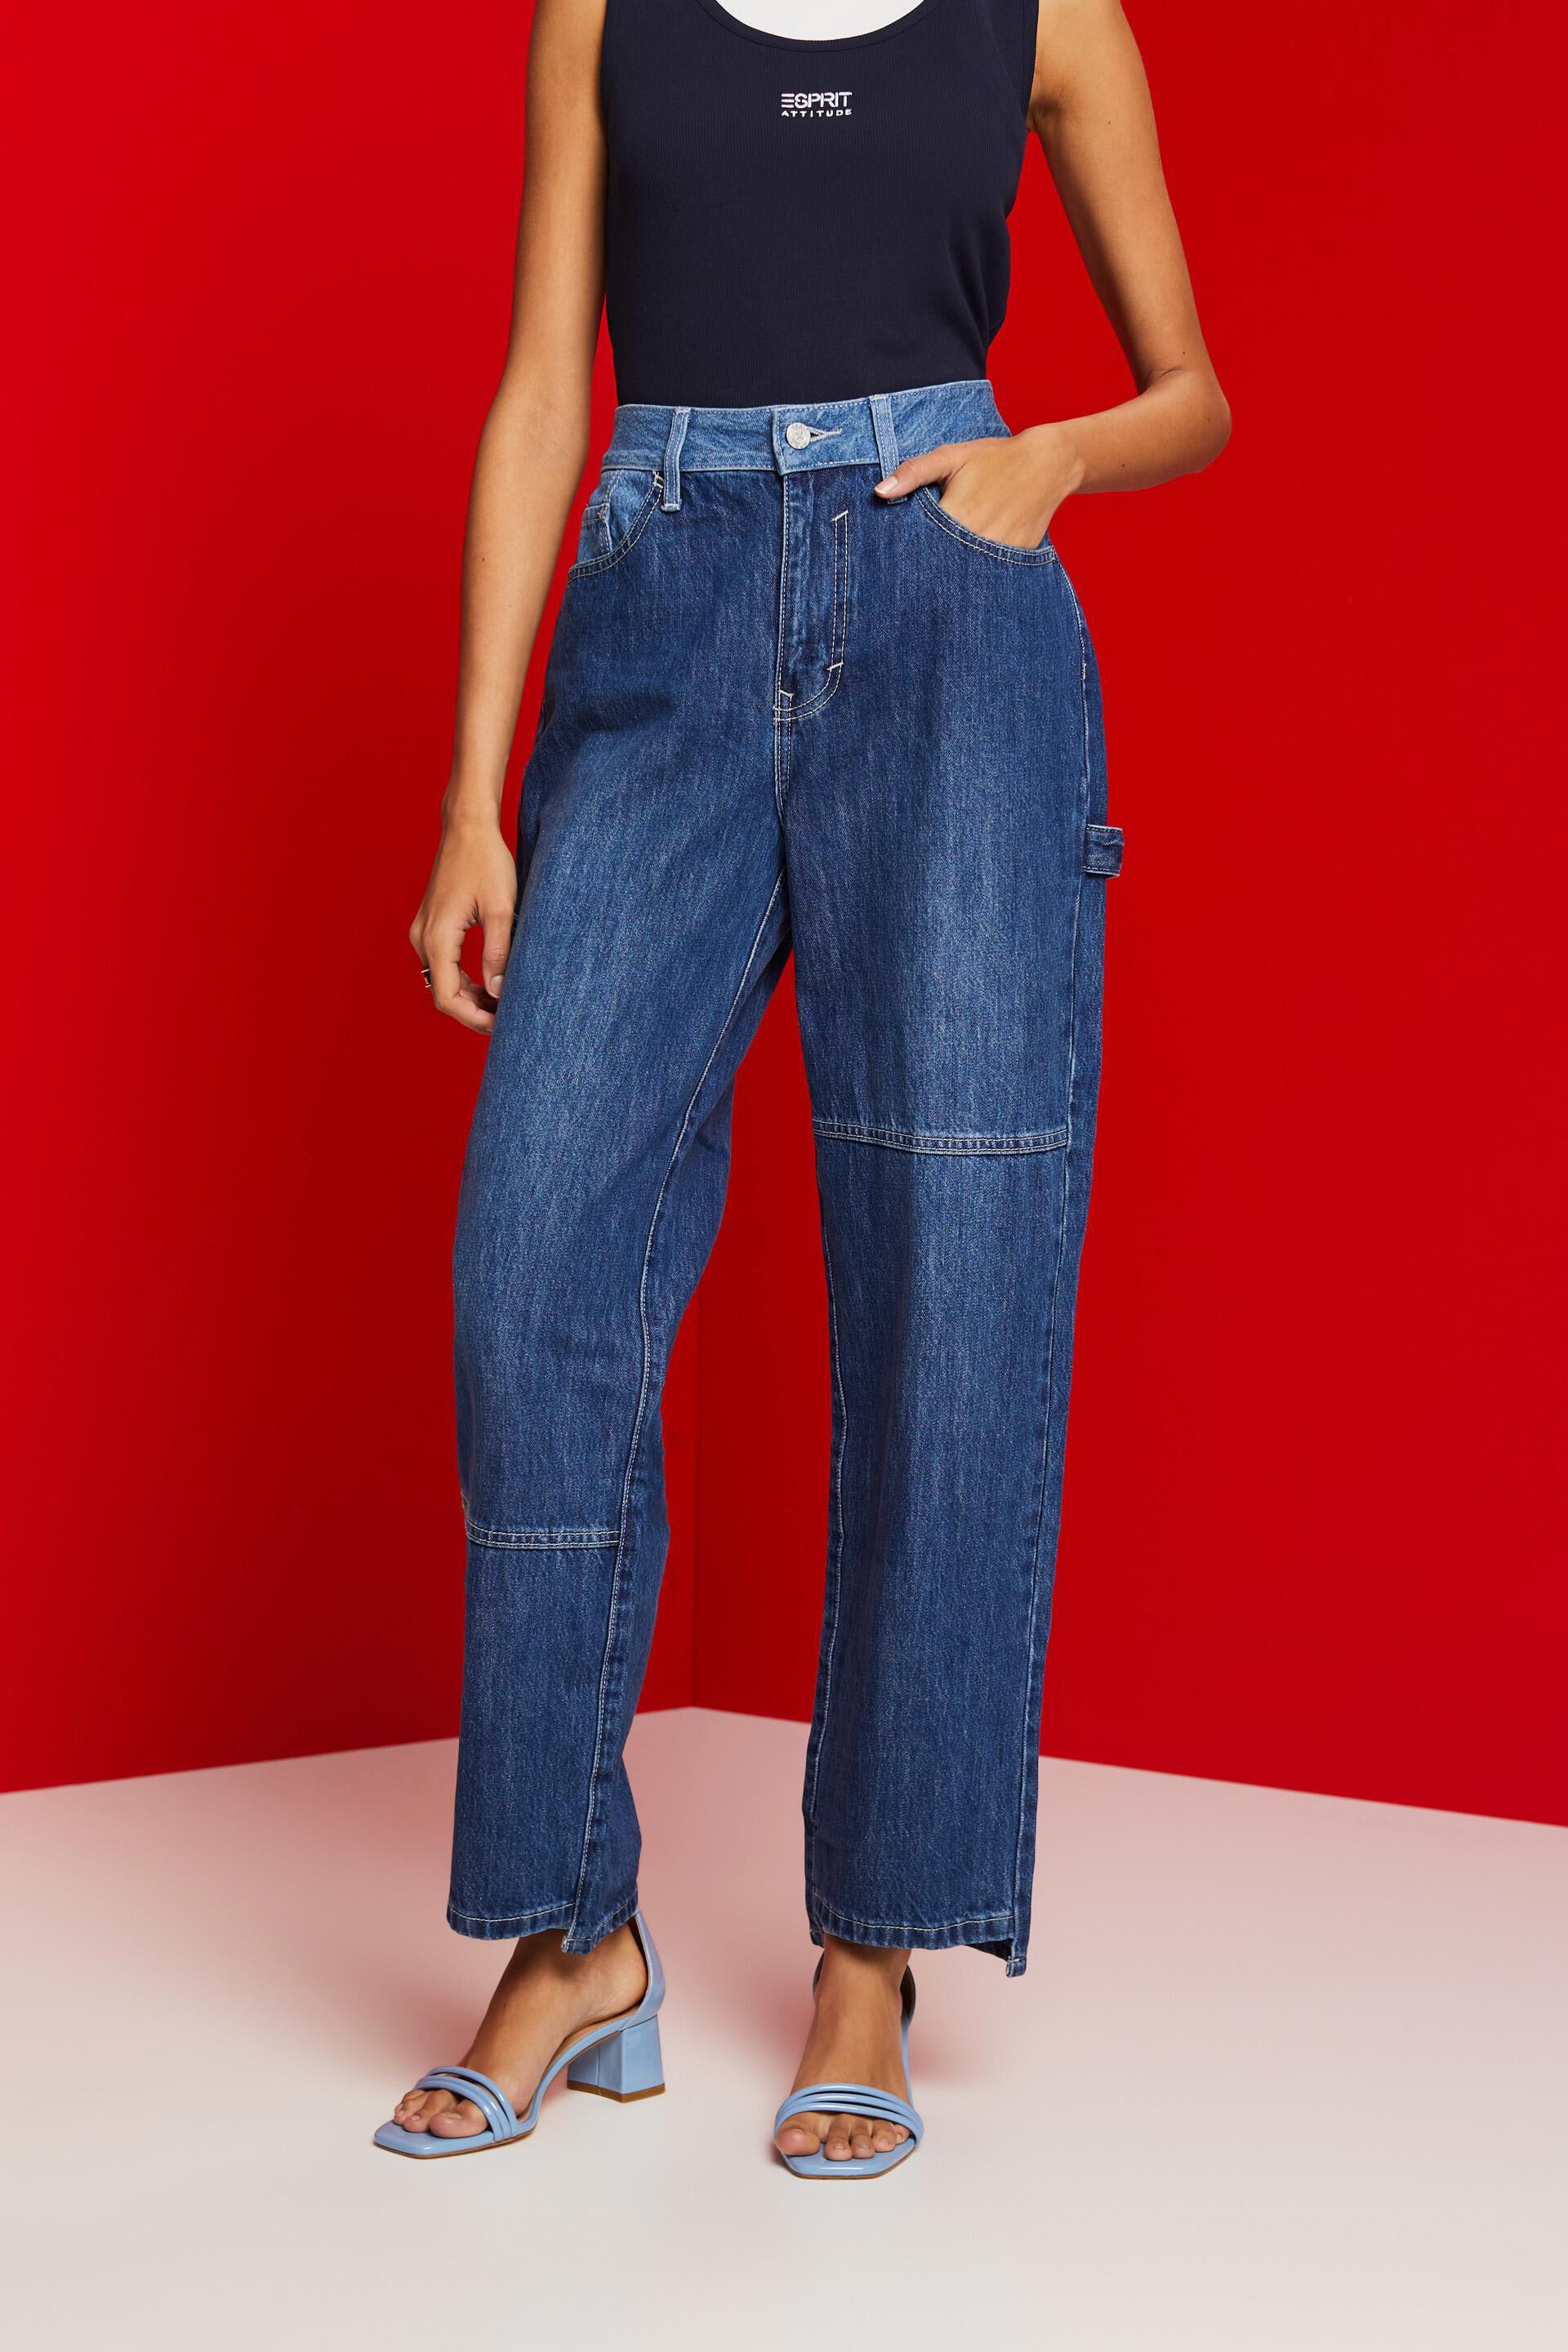 Esprit Damen Asymmetrische Jeans mit weitem Bein im Stil der 90er